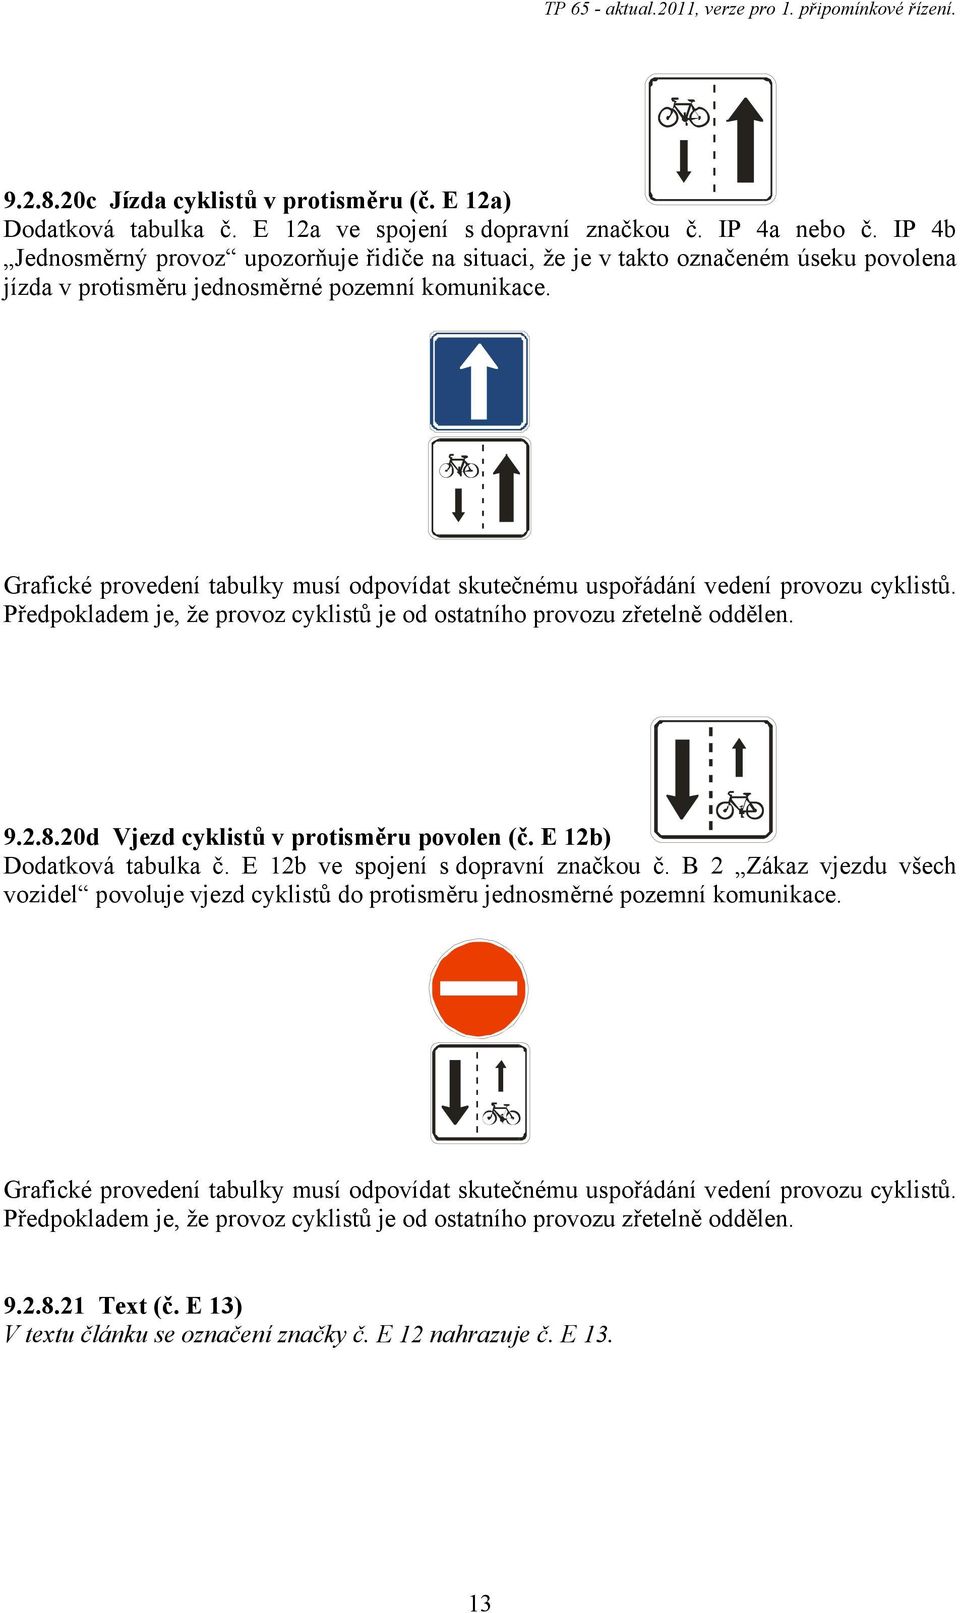 Grafické provedení tabulky musí odpovídat skutečnému uspořádání vedení provozu cyklistů. Předpokladem je, že provoz cyklistů je od ostatního provozu zřetelně oddělen. 9.2.8.